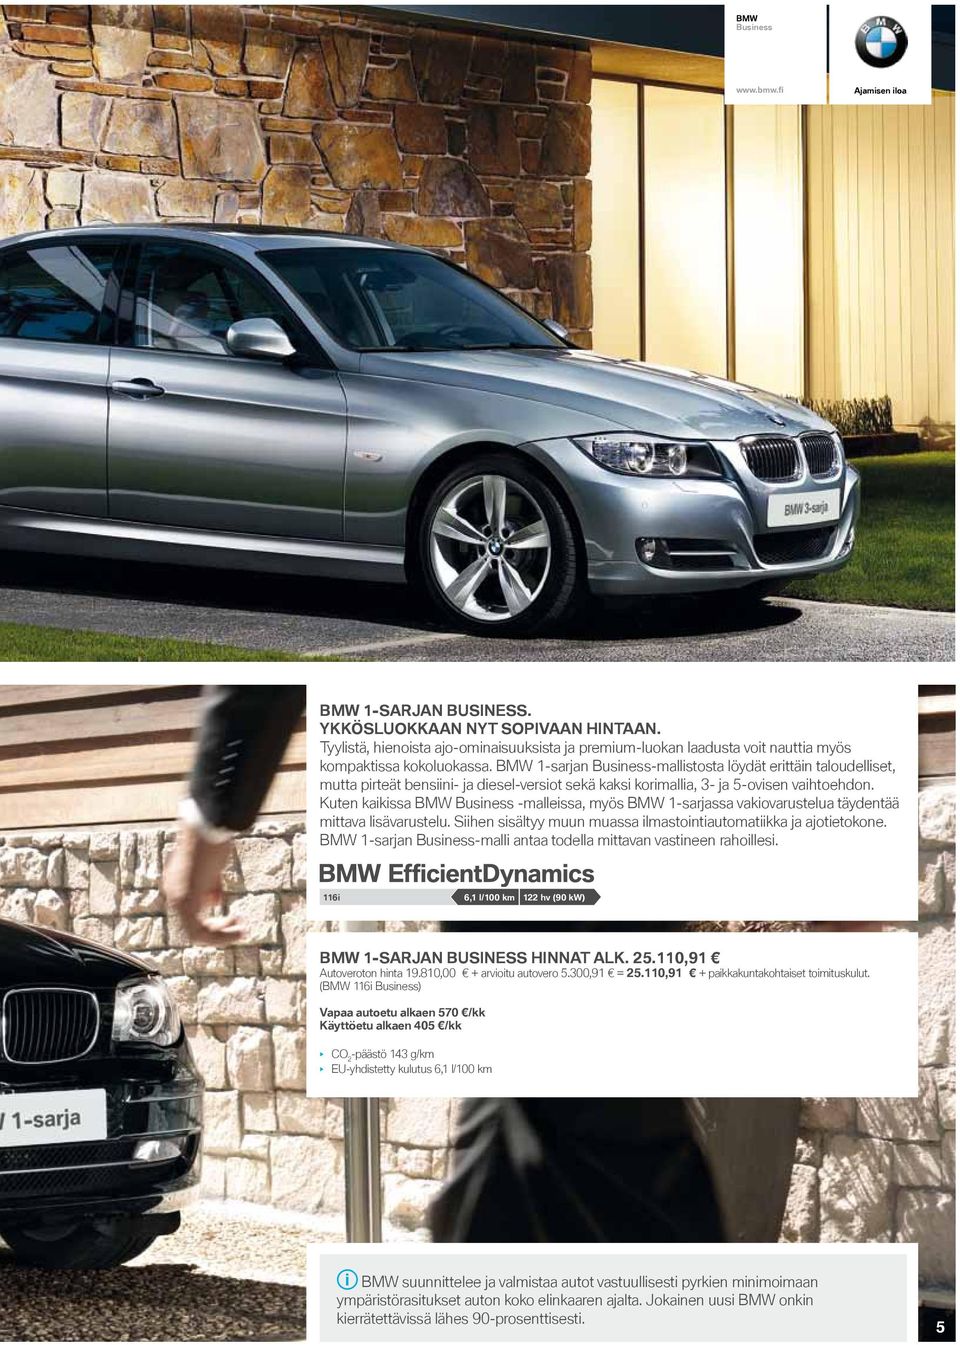 Kuten kaikissa BMW -malleissa, myös BMW 1-sarjassa vakiovarustelua täydentää mittava lisävarustelu. Siihen sisältyy muun muassa ilmastointiautomatiikka ja ajotietokone.